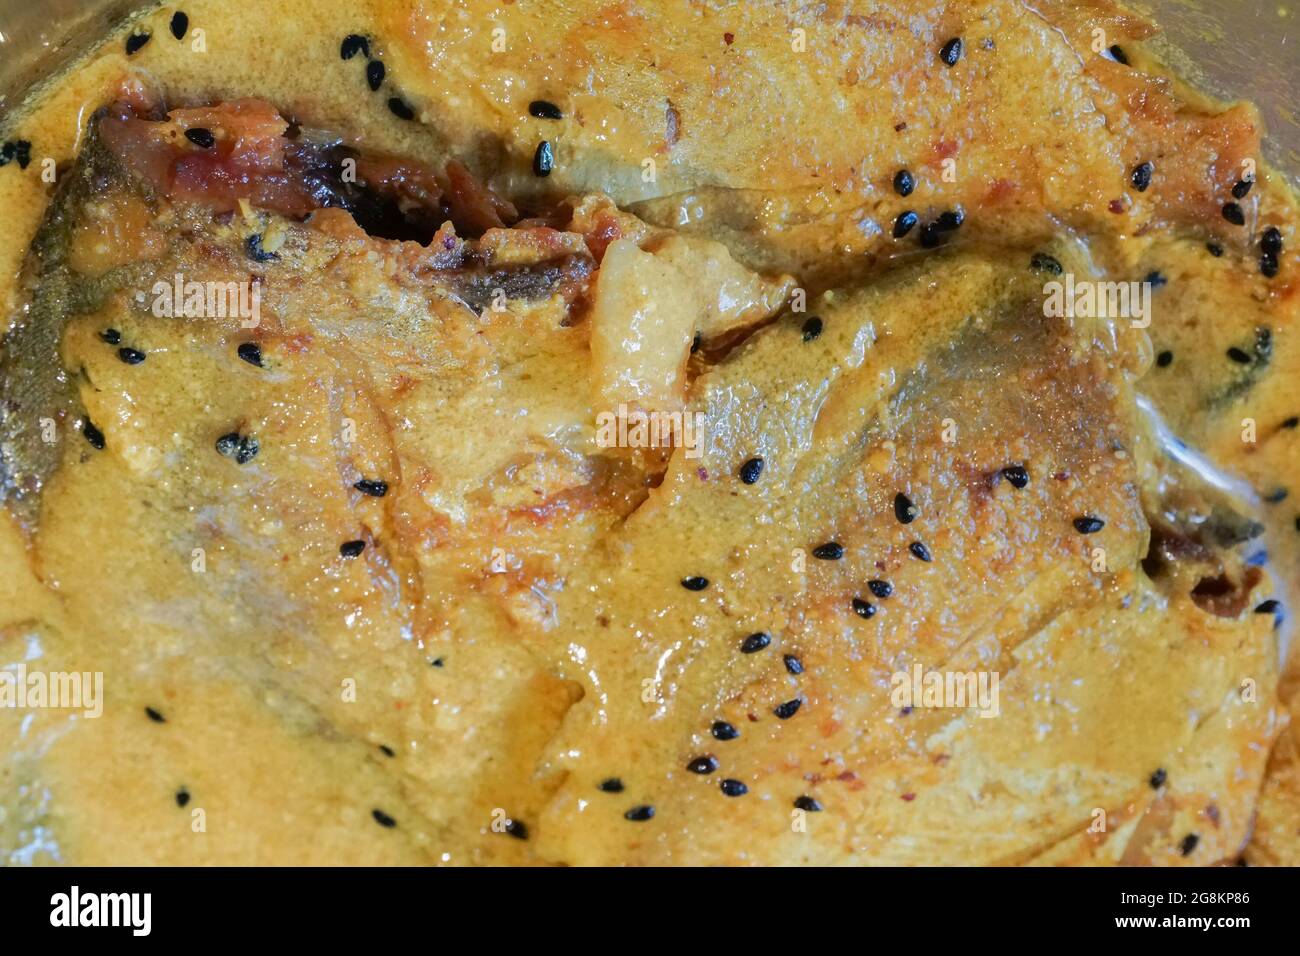 Butterfische fisch Stücke auf Platte, scharfe indische Gericht. Beliebt bei den Bengalen und Südasien für seinen Geschmack. Stockfoto